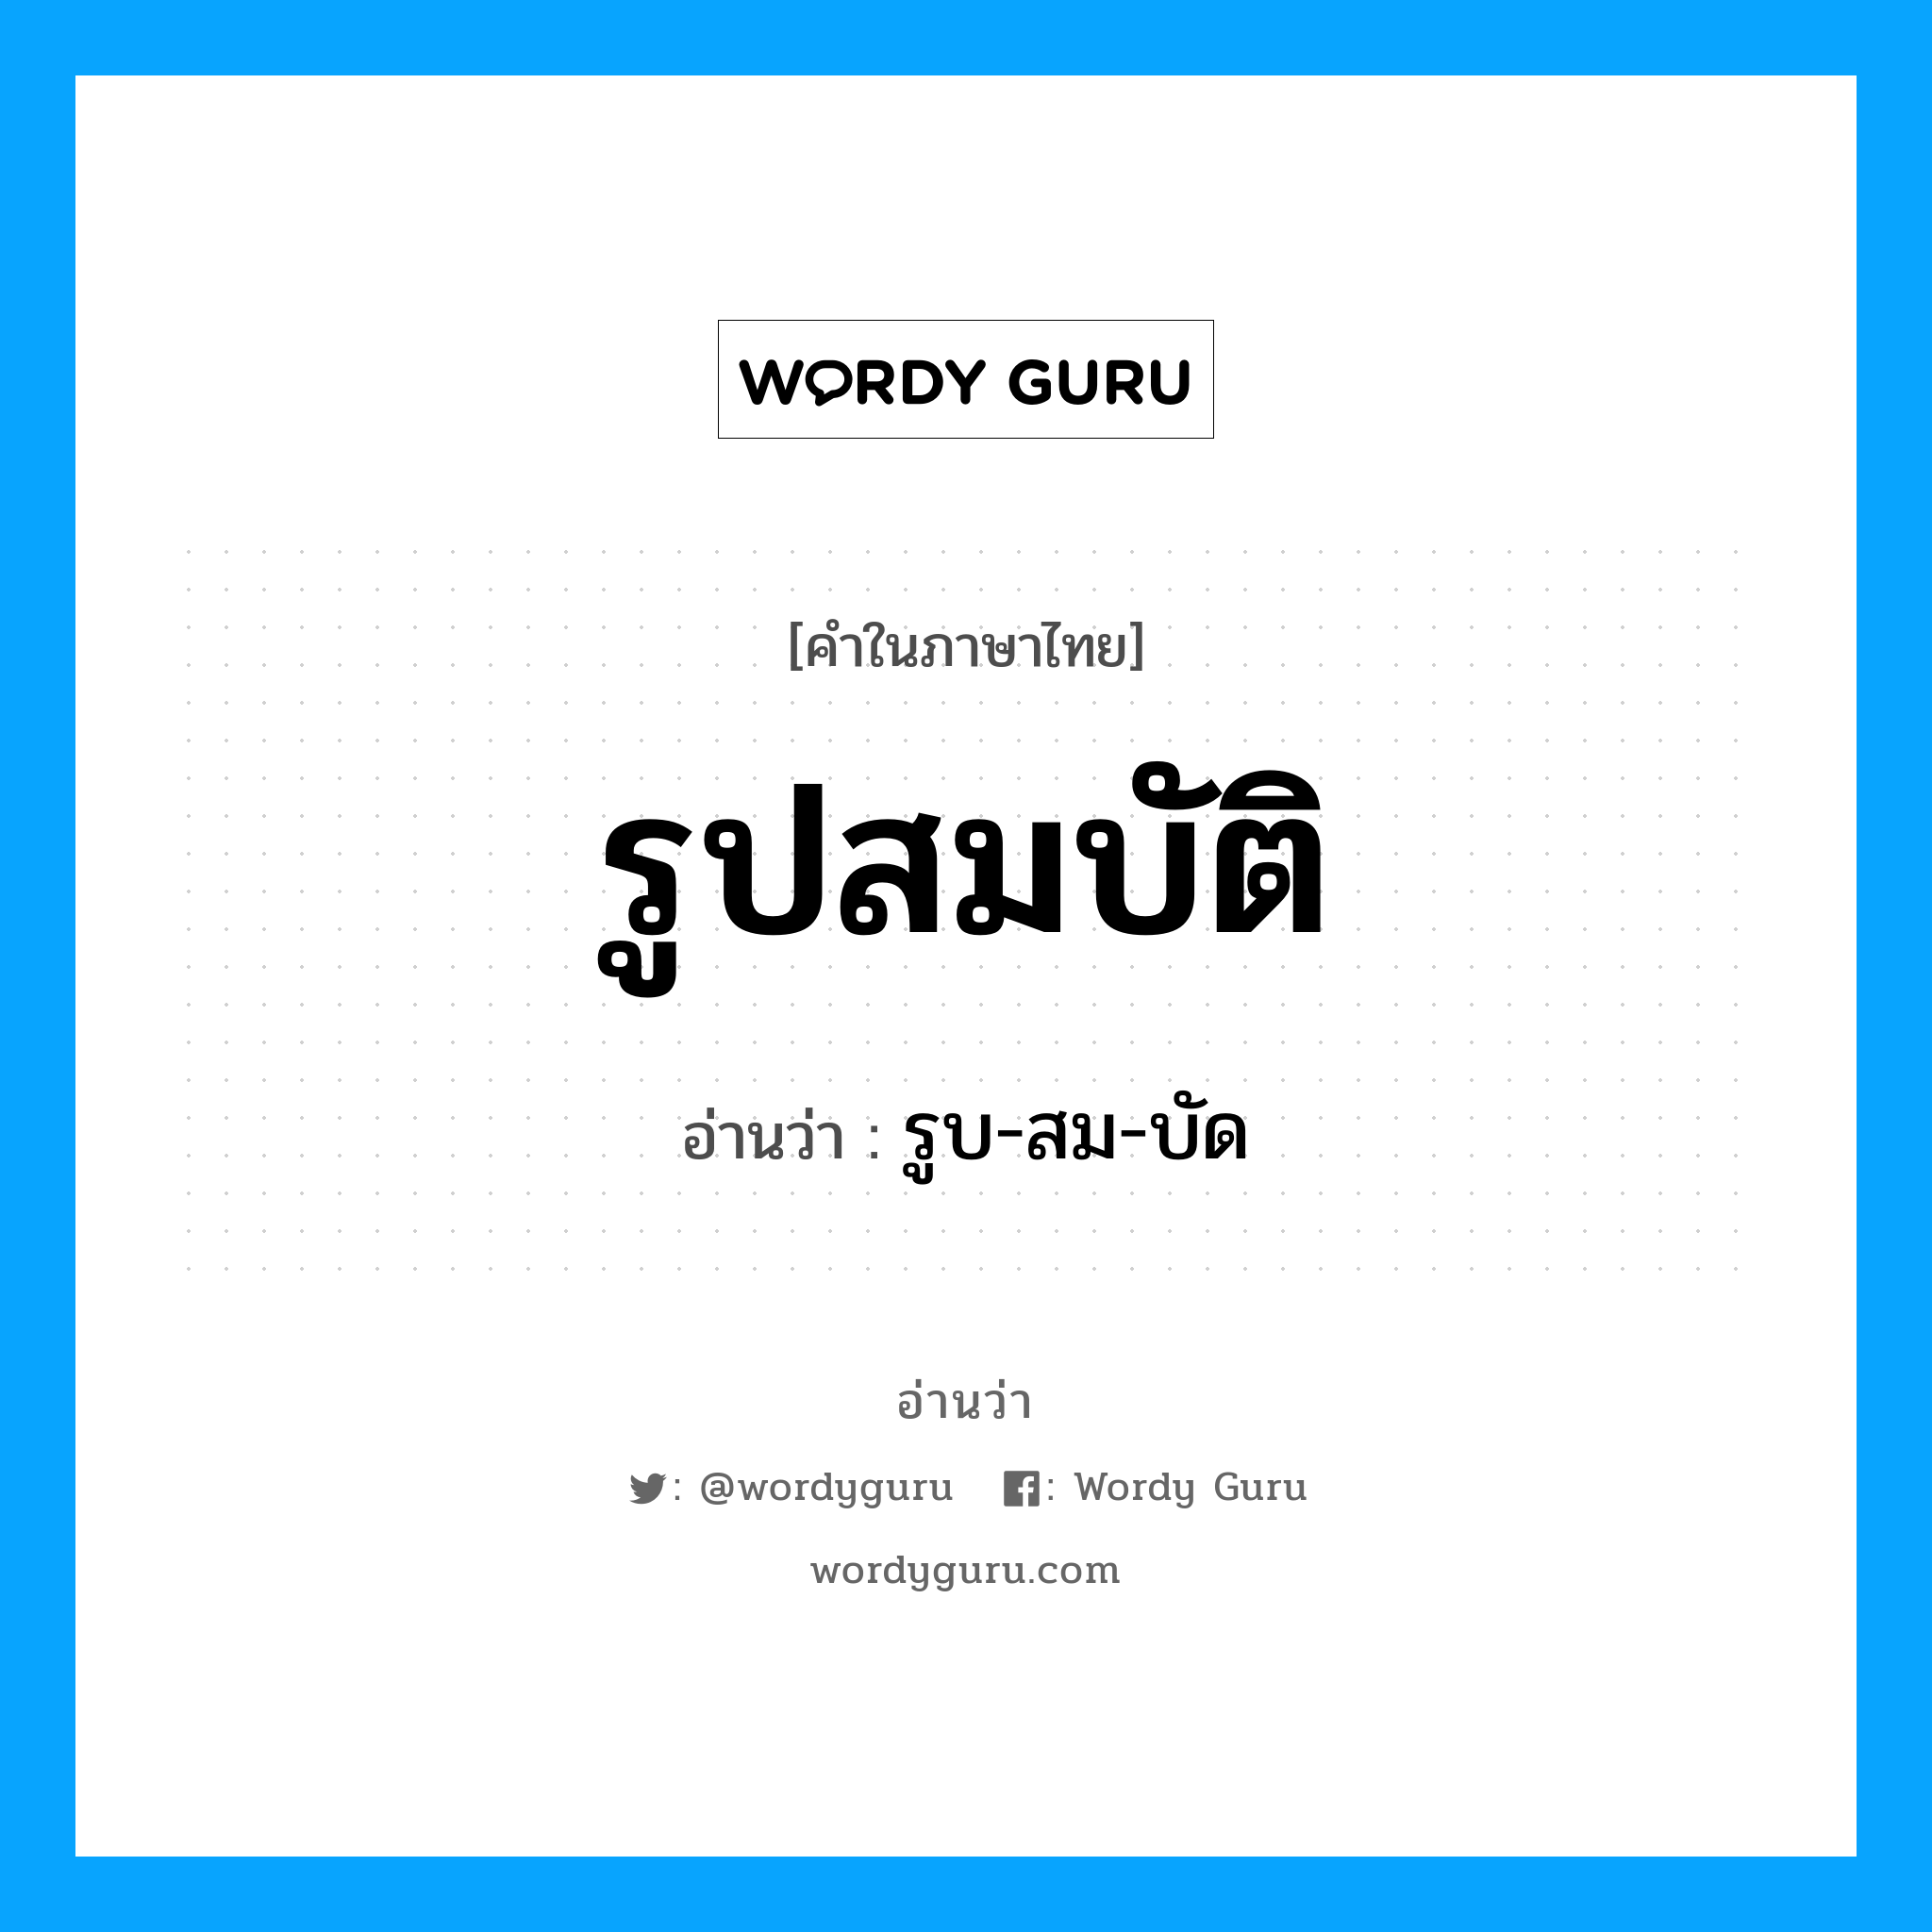 รูบ-สม-บัด เป็นคำอ่านของคำไหน?, คำในภาษาไทย รูบ-สม-บัด อ่านว่า รูปสมบัติ